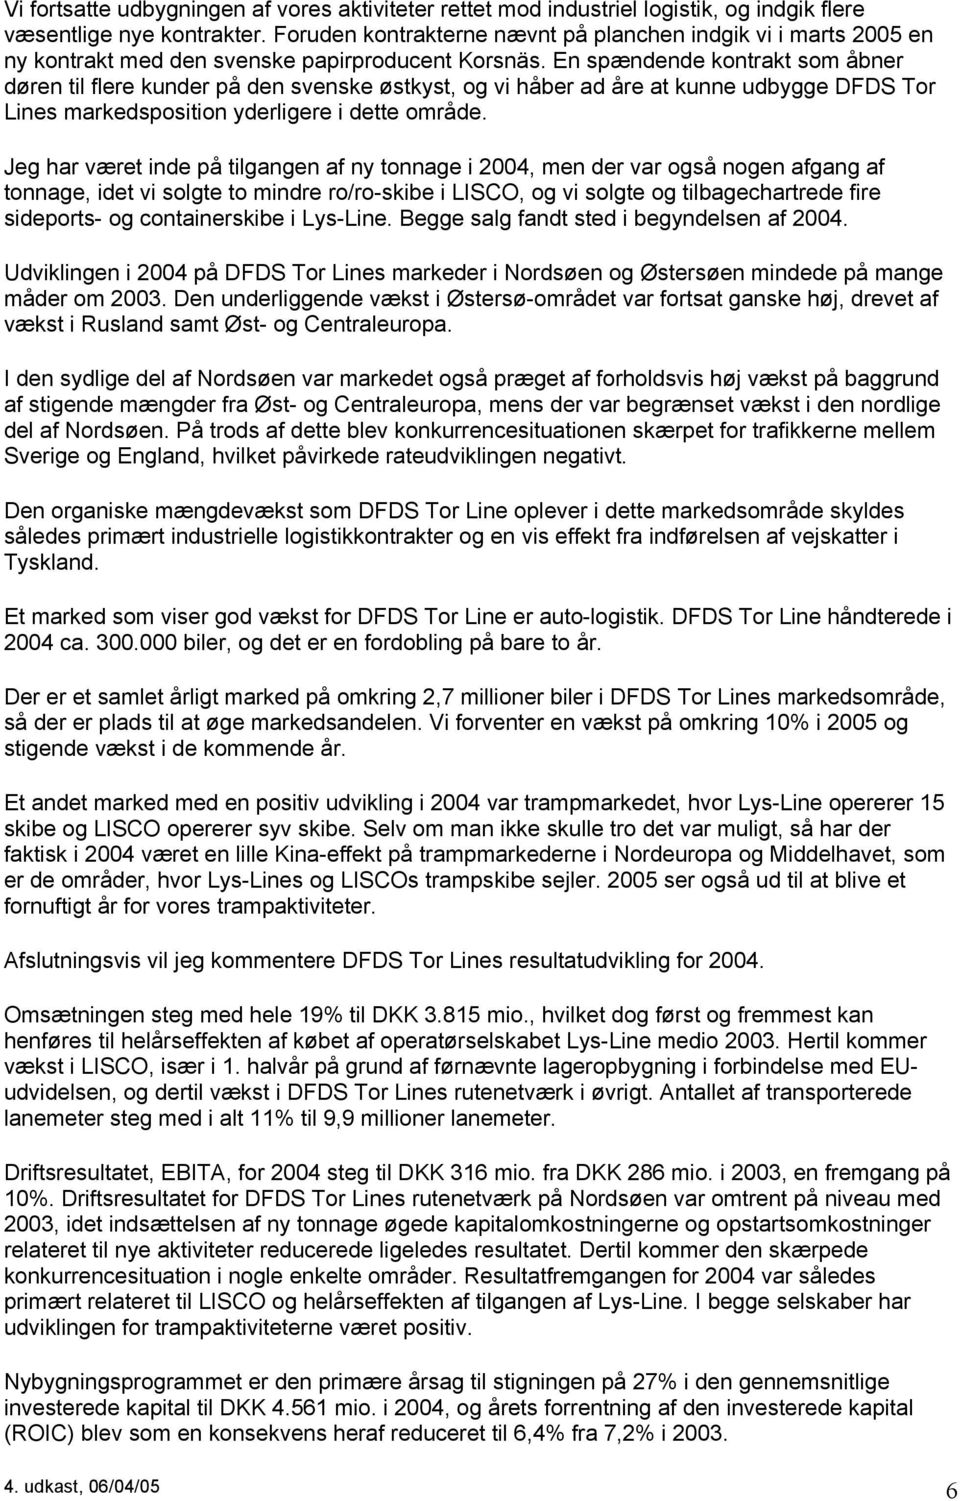 En spændende kontrakt som åbner døren til flere kunder på den svenske østkyst, og vi håber ad åre at kunne udbygge DFDS Tor Lines markedsposition yderligere i dette område.